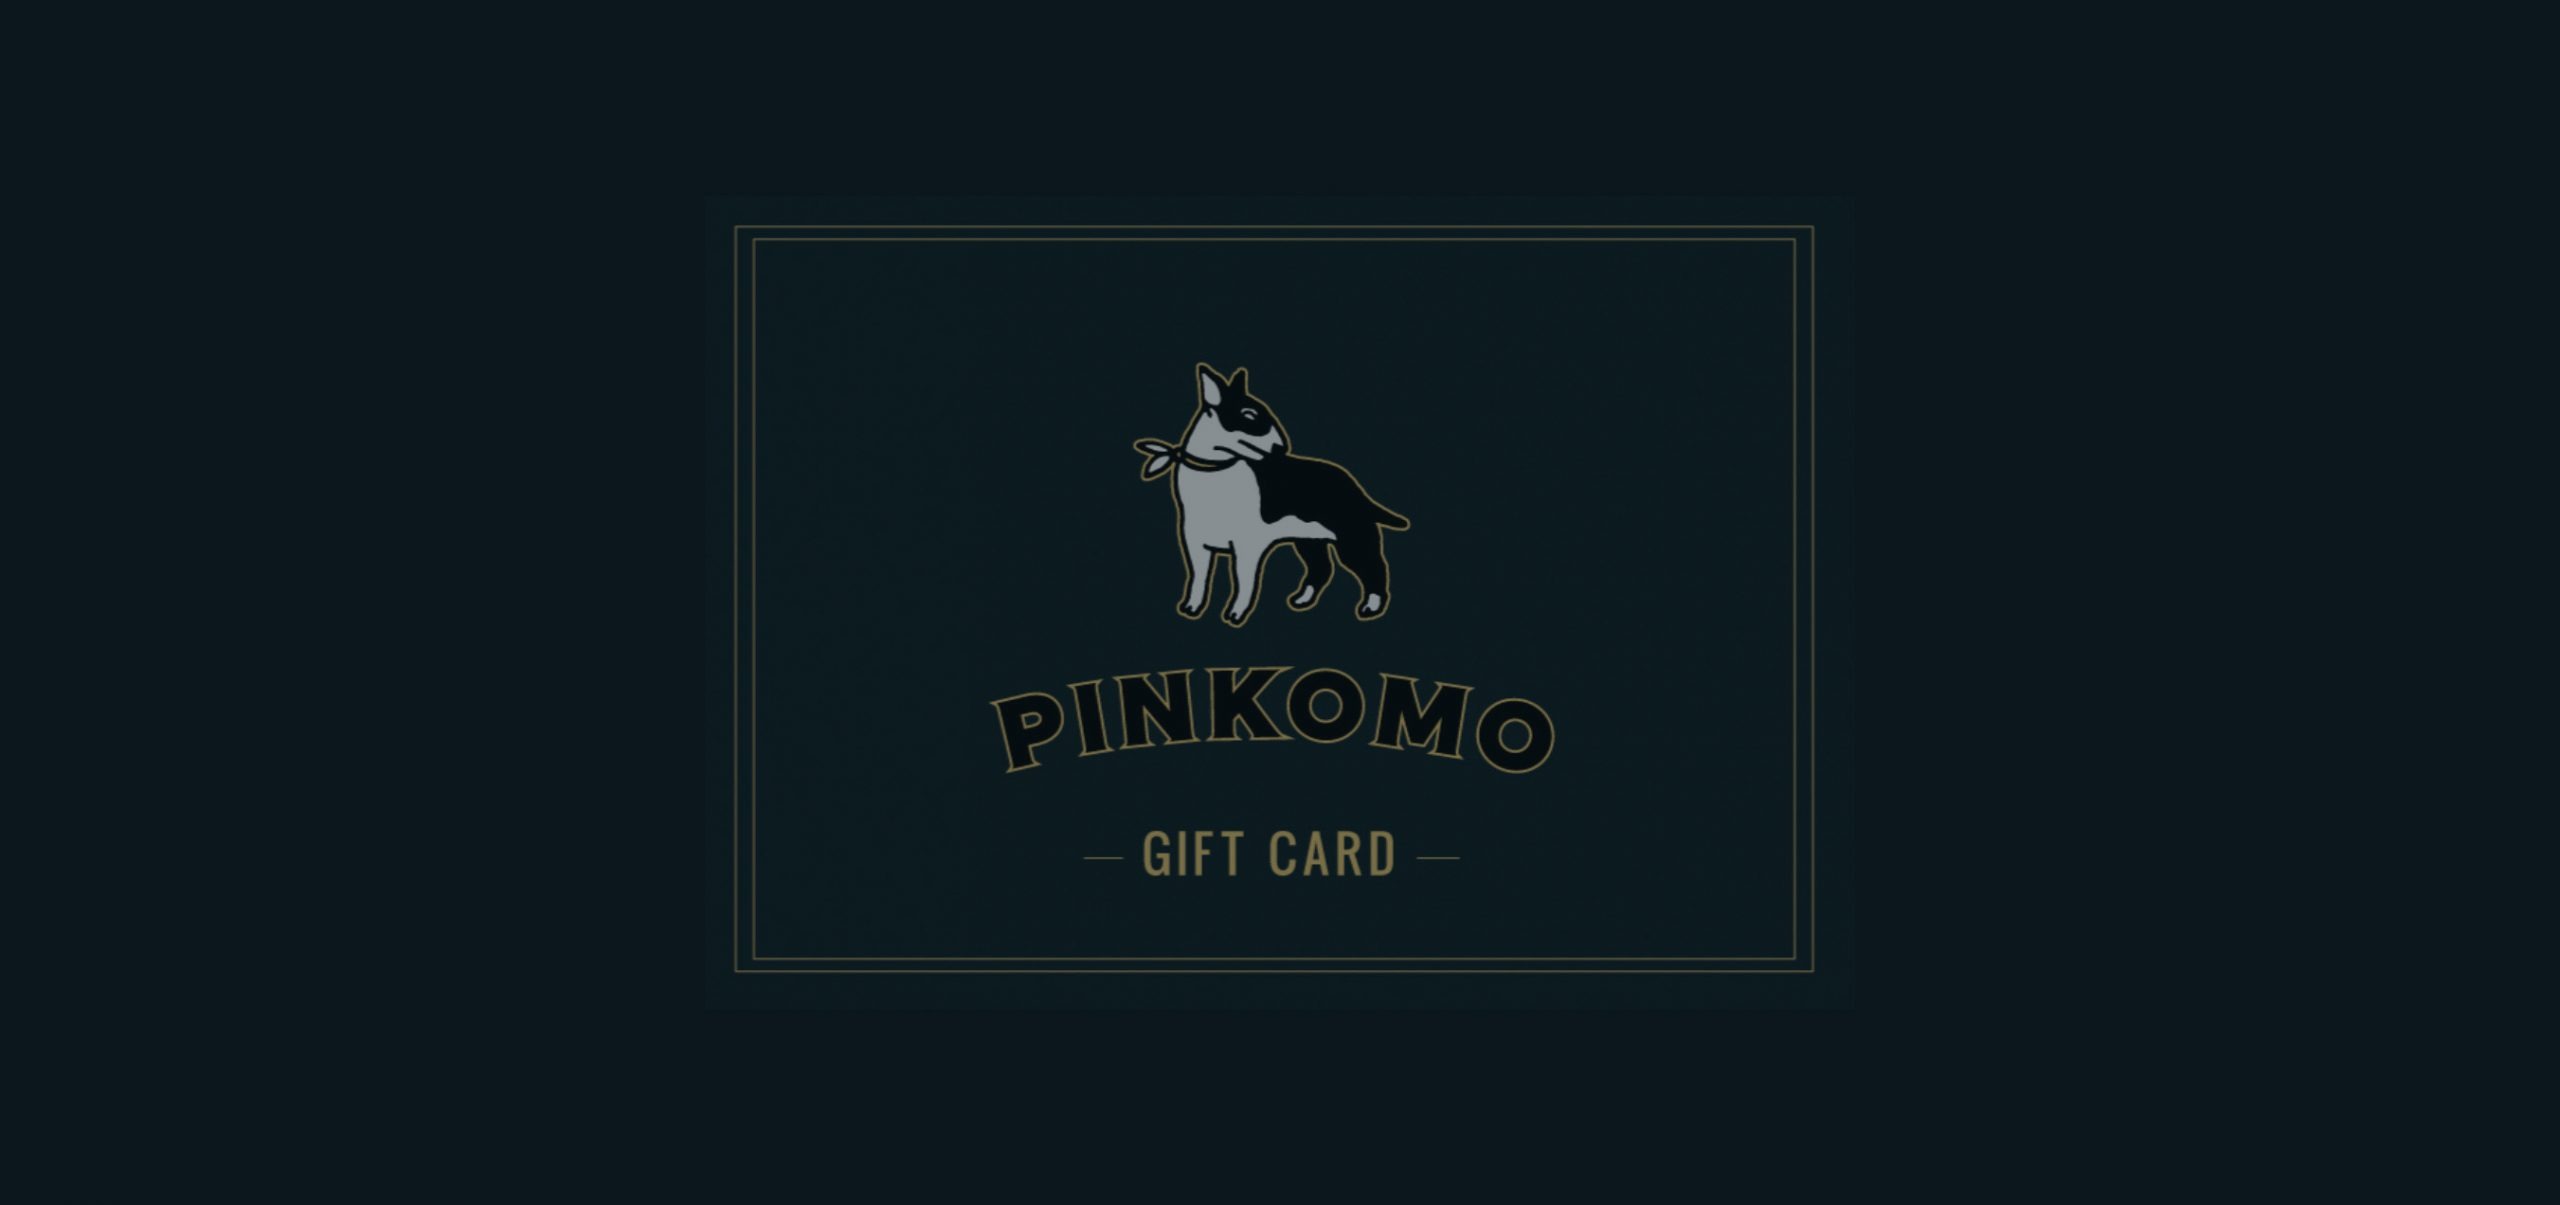 Pinkomo Gift Card